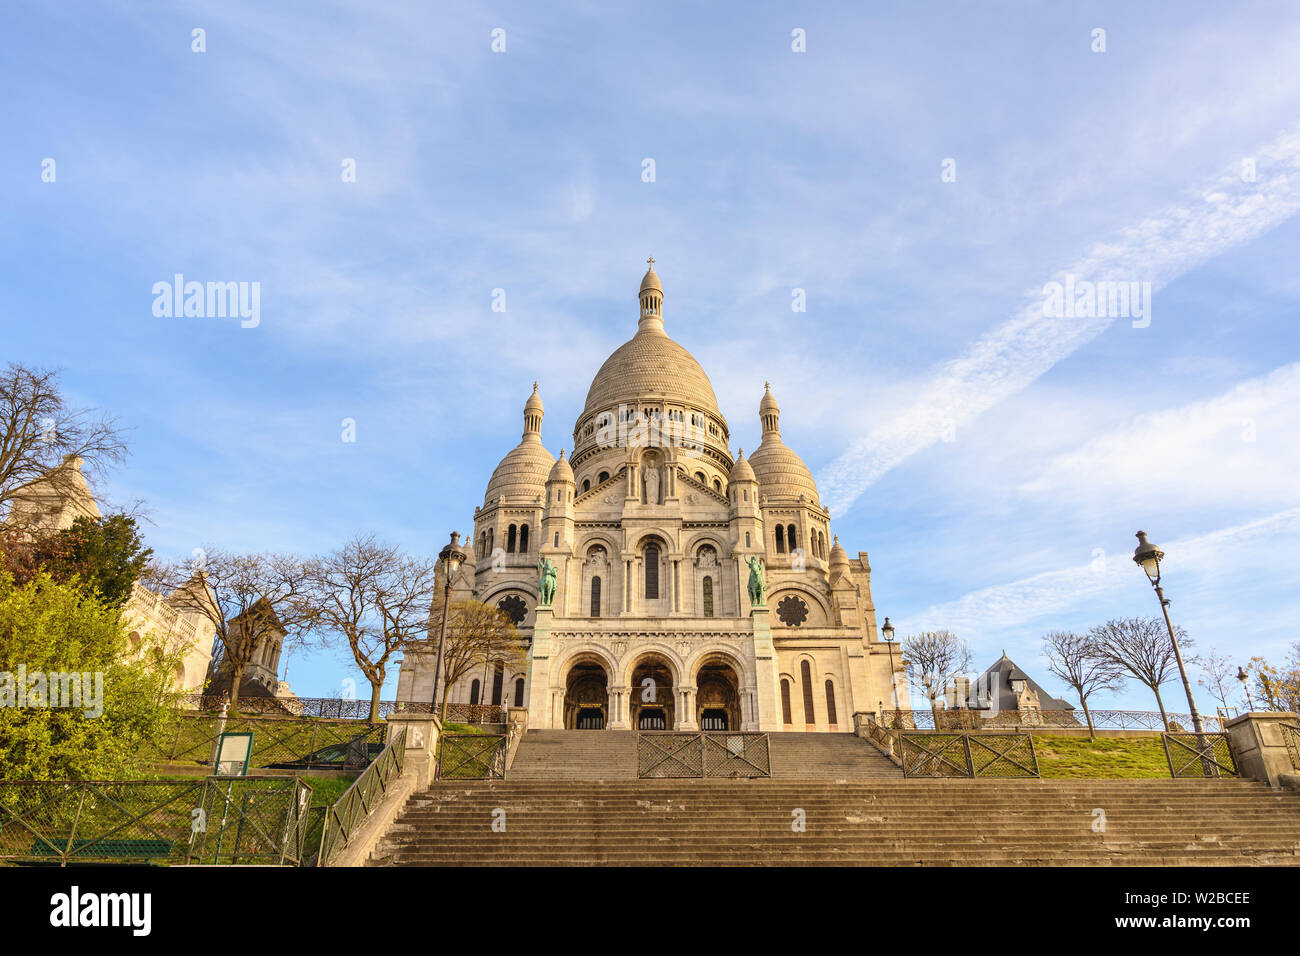 París Francia time lapse 4K, ciudad secuencia acelerada en Sacre Coeur (Basílica del Sagrado Corazón) Foto de stock